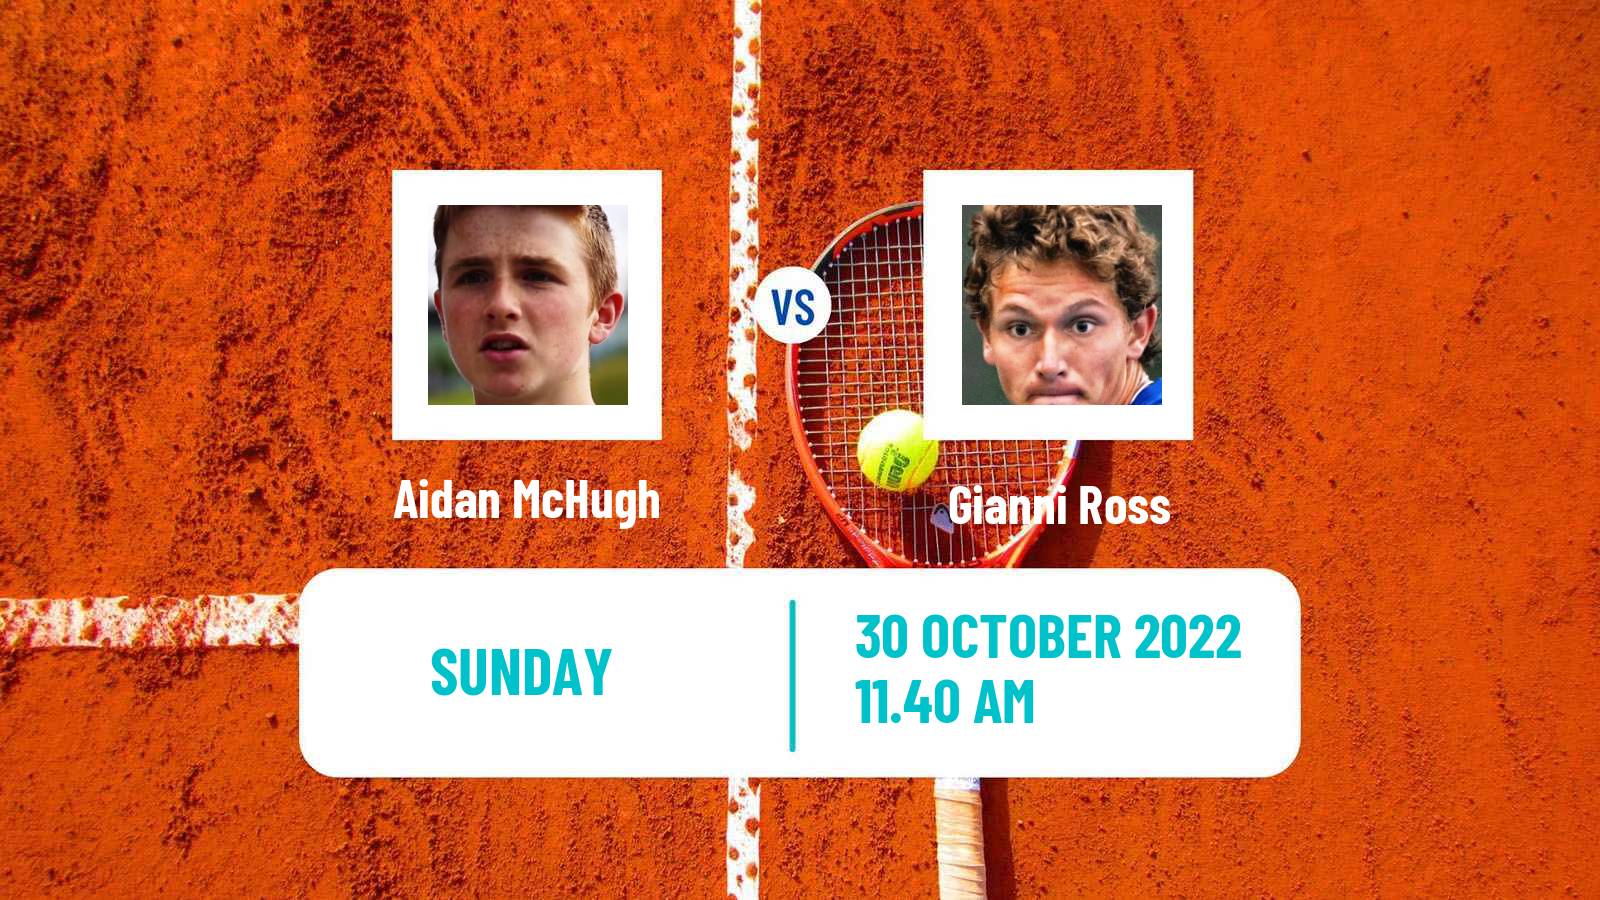 Tennis ATP Challenger Aidan McHugh - Gianni Ross